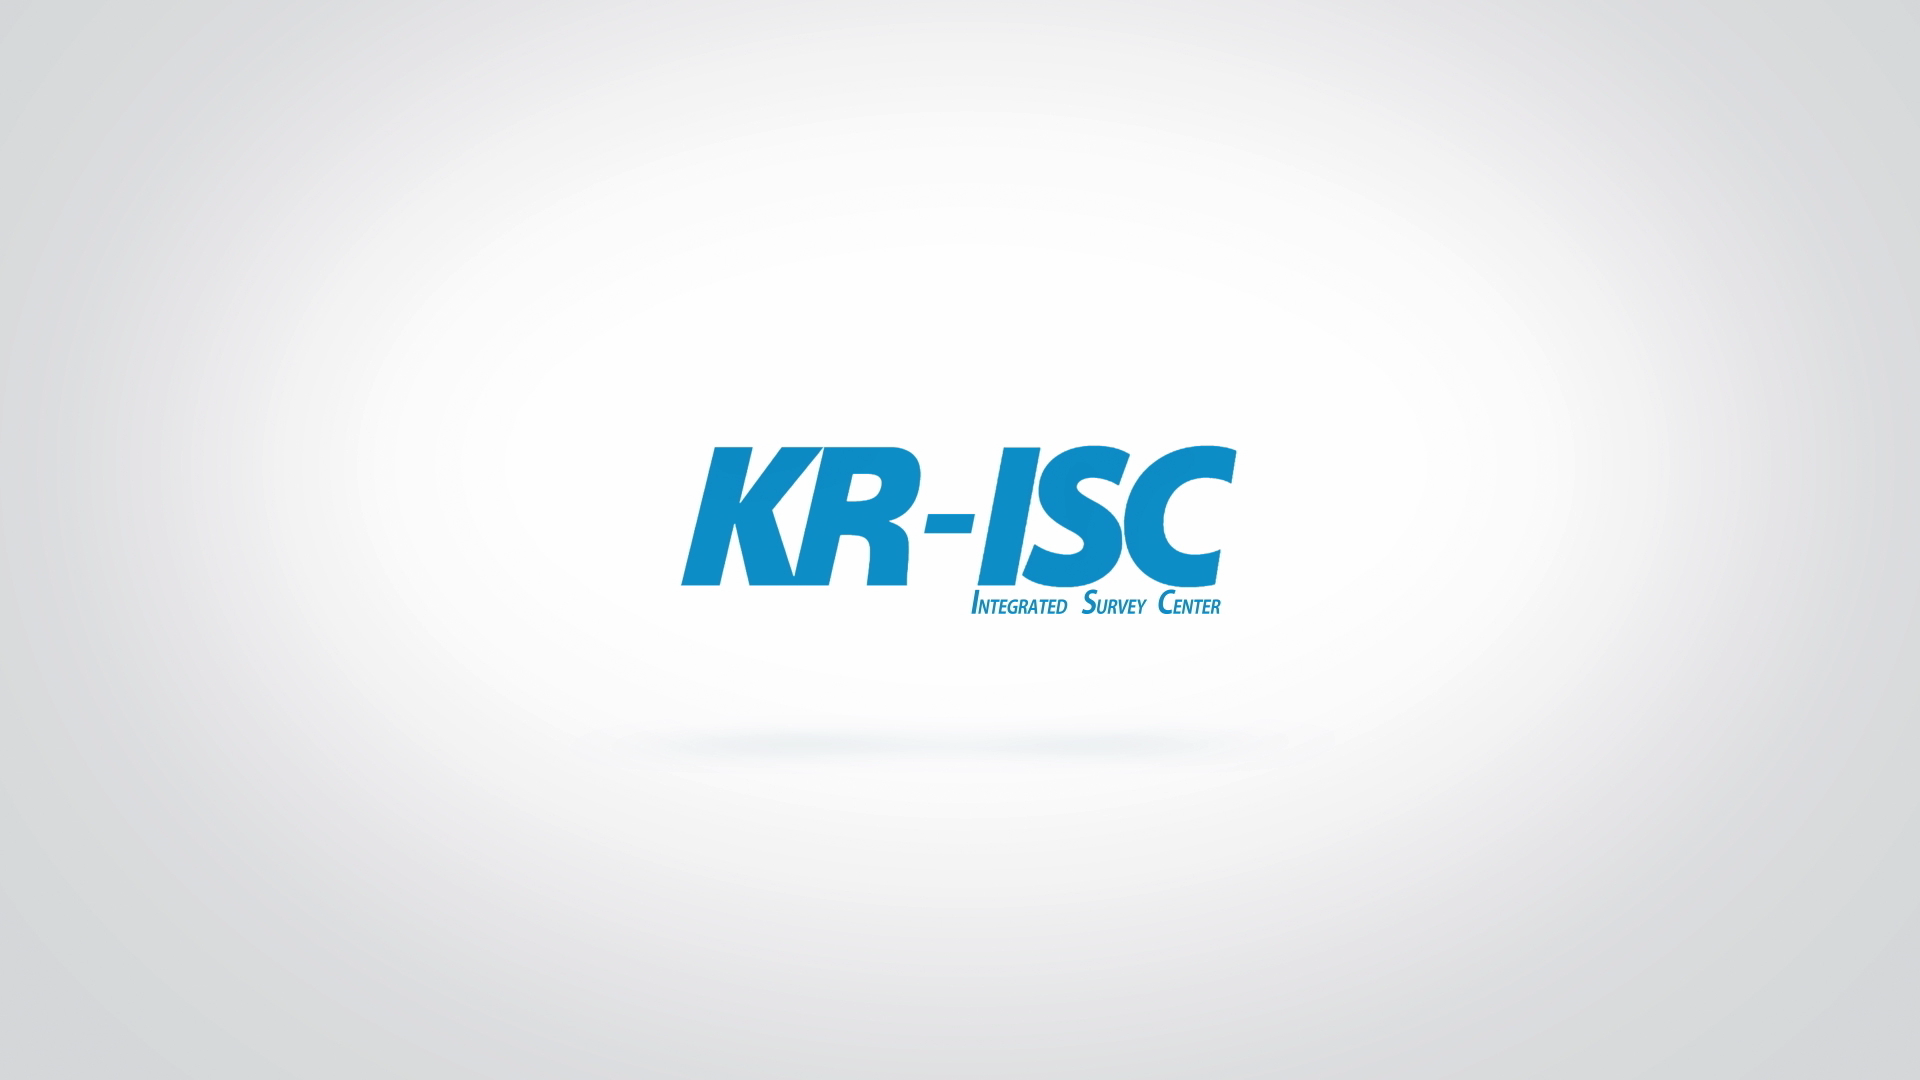 KR-ISC Promotional Film (KOR)